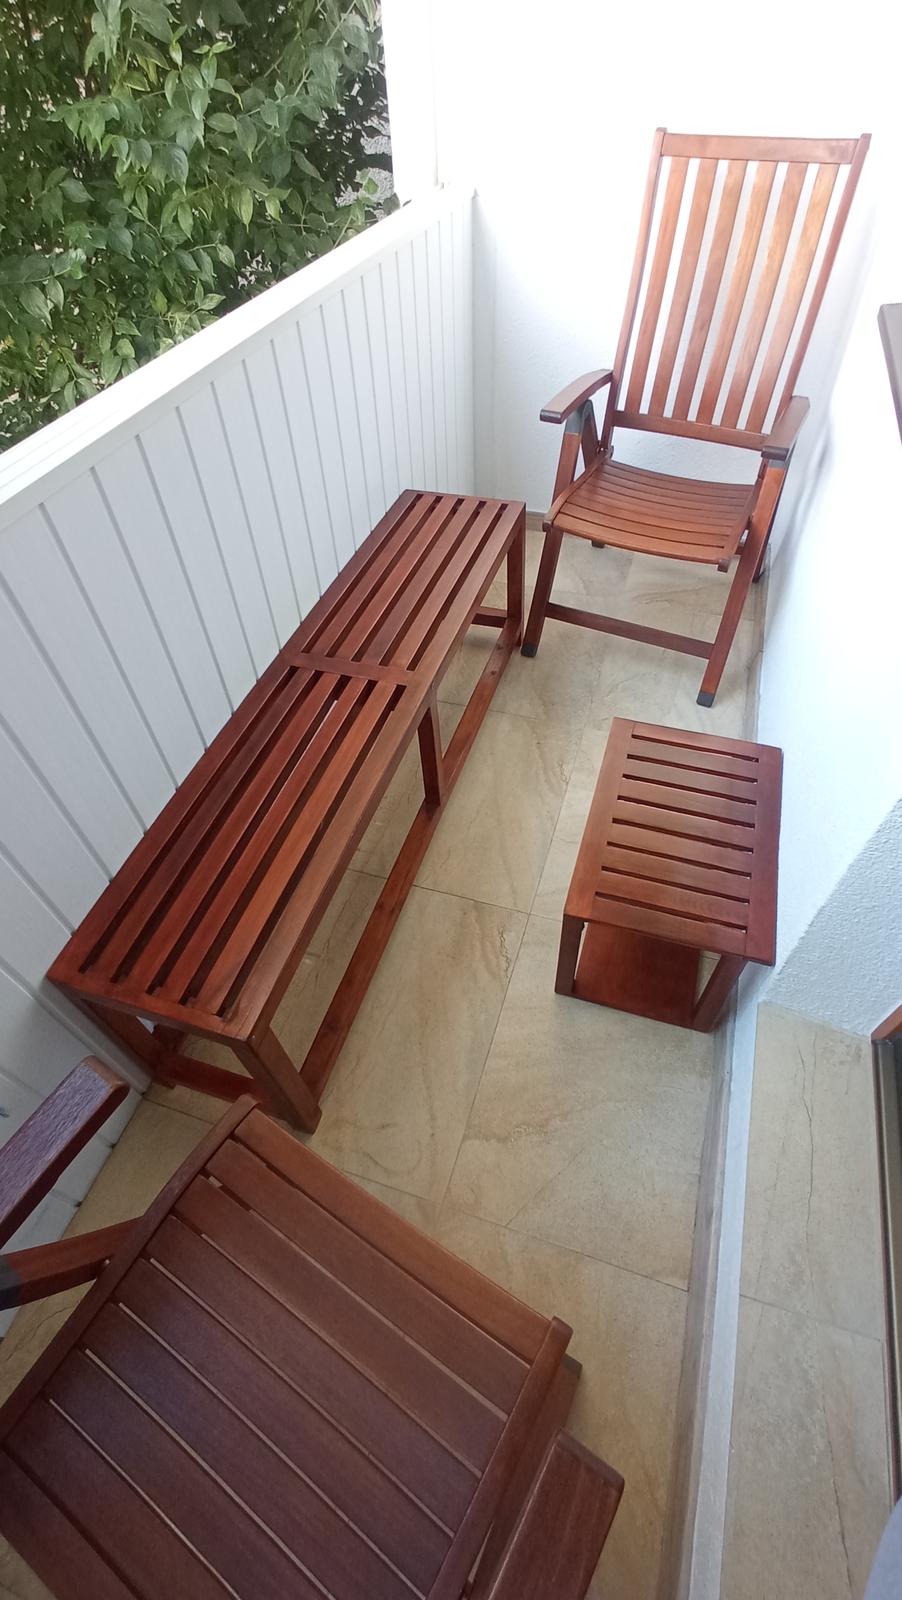 stolička lavička lavica záhradný nábytok balkón terasa - Obrázok č. 2